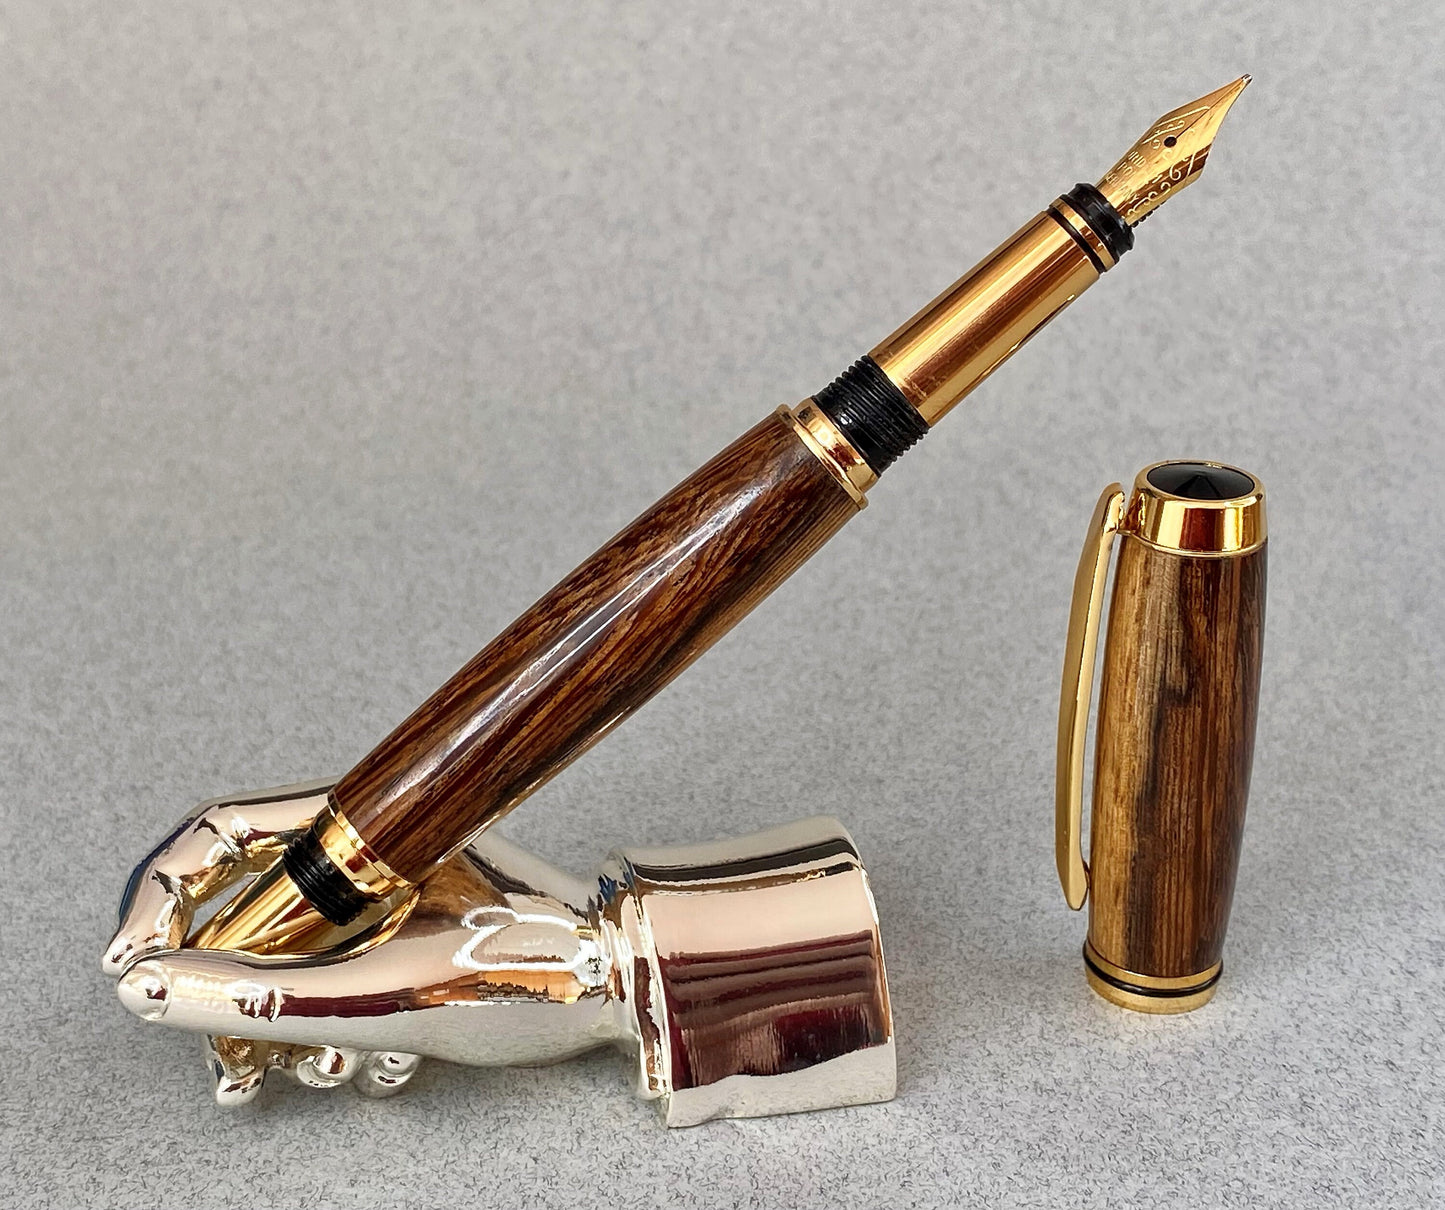 Panga Panga wood pen standing upright showing its grain effect and gold plated nib